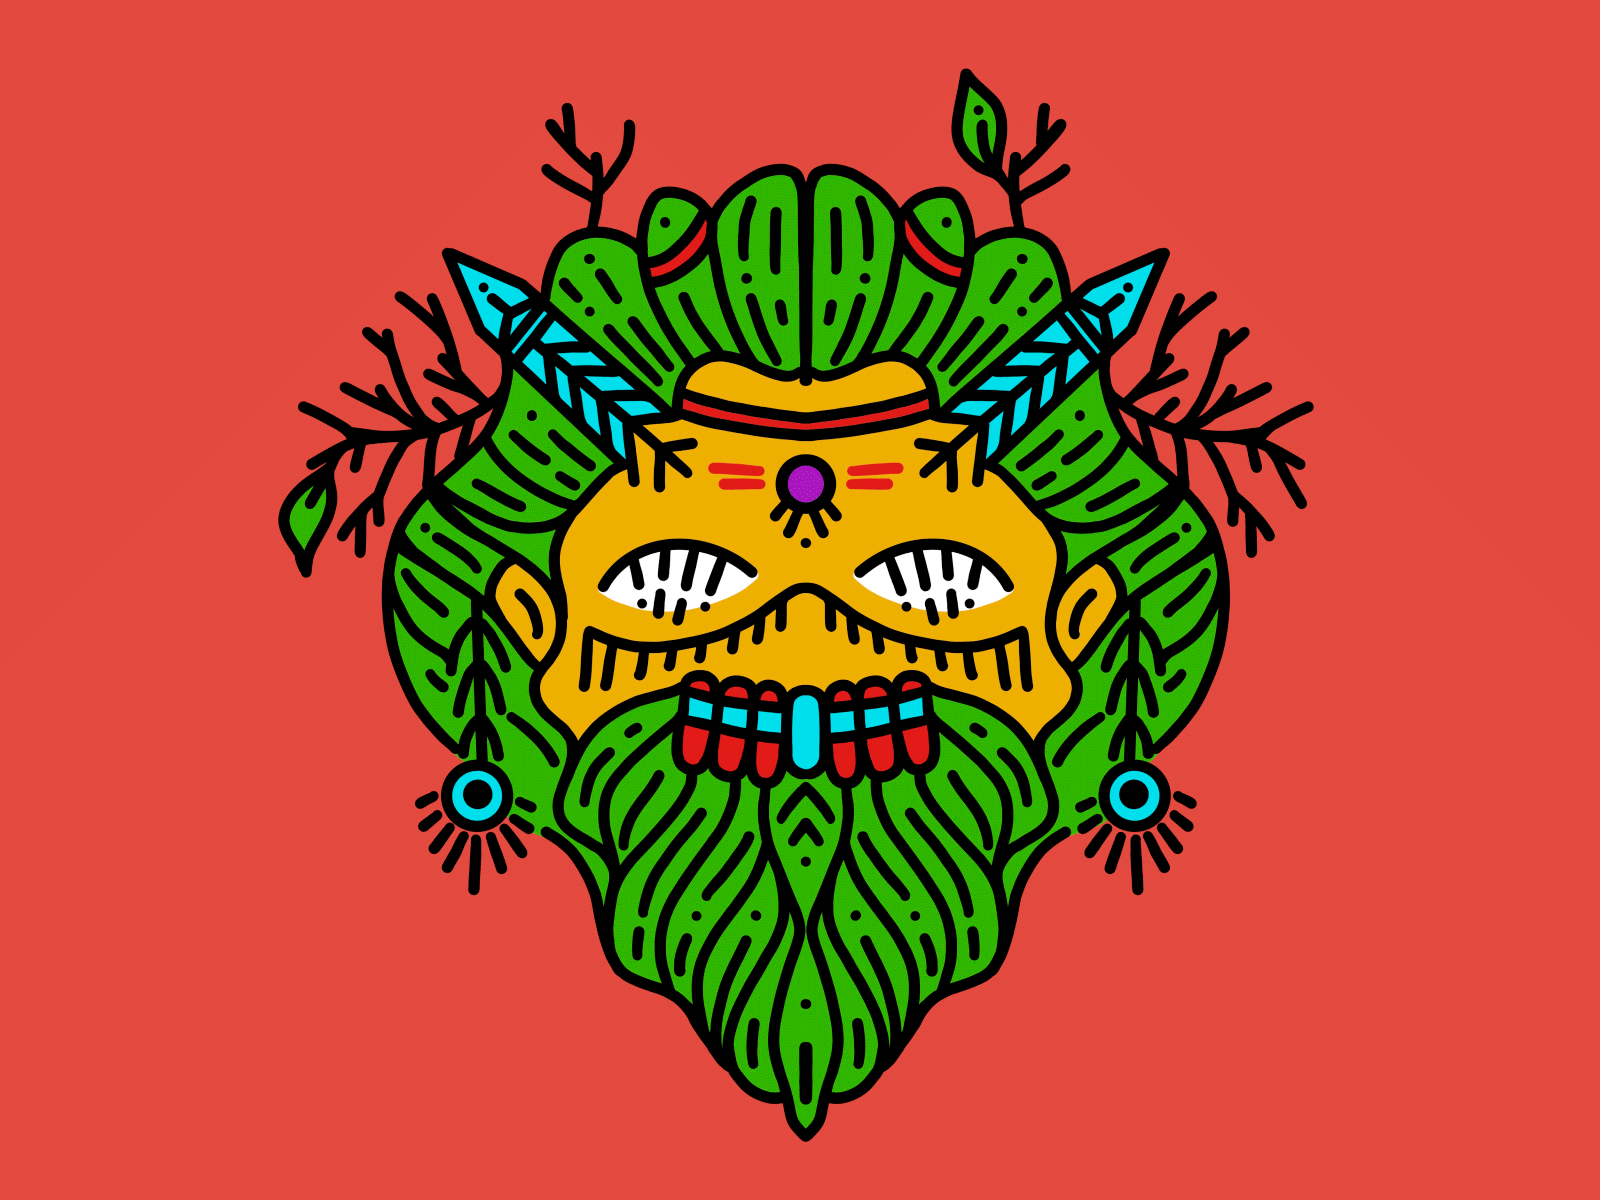 Forest creatures creatures design graphic design illustration